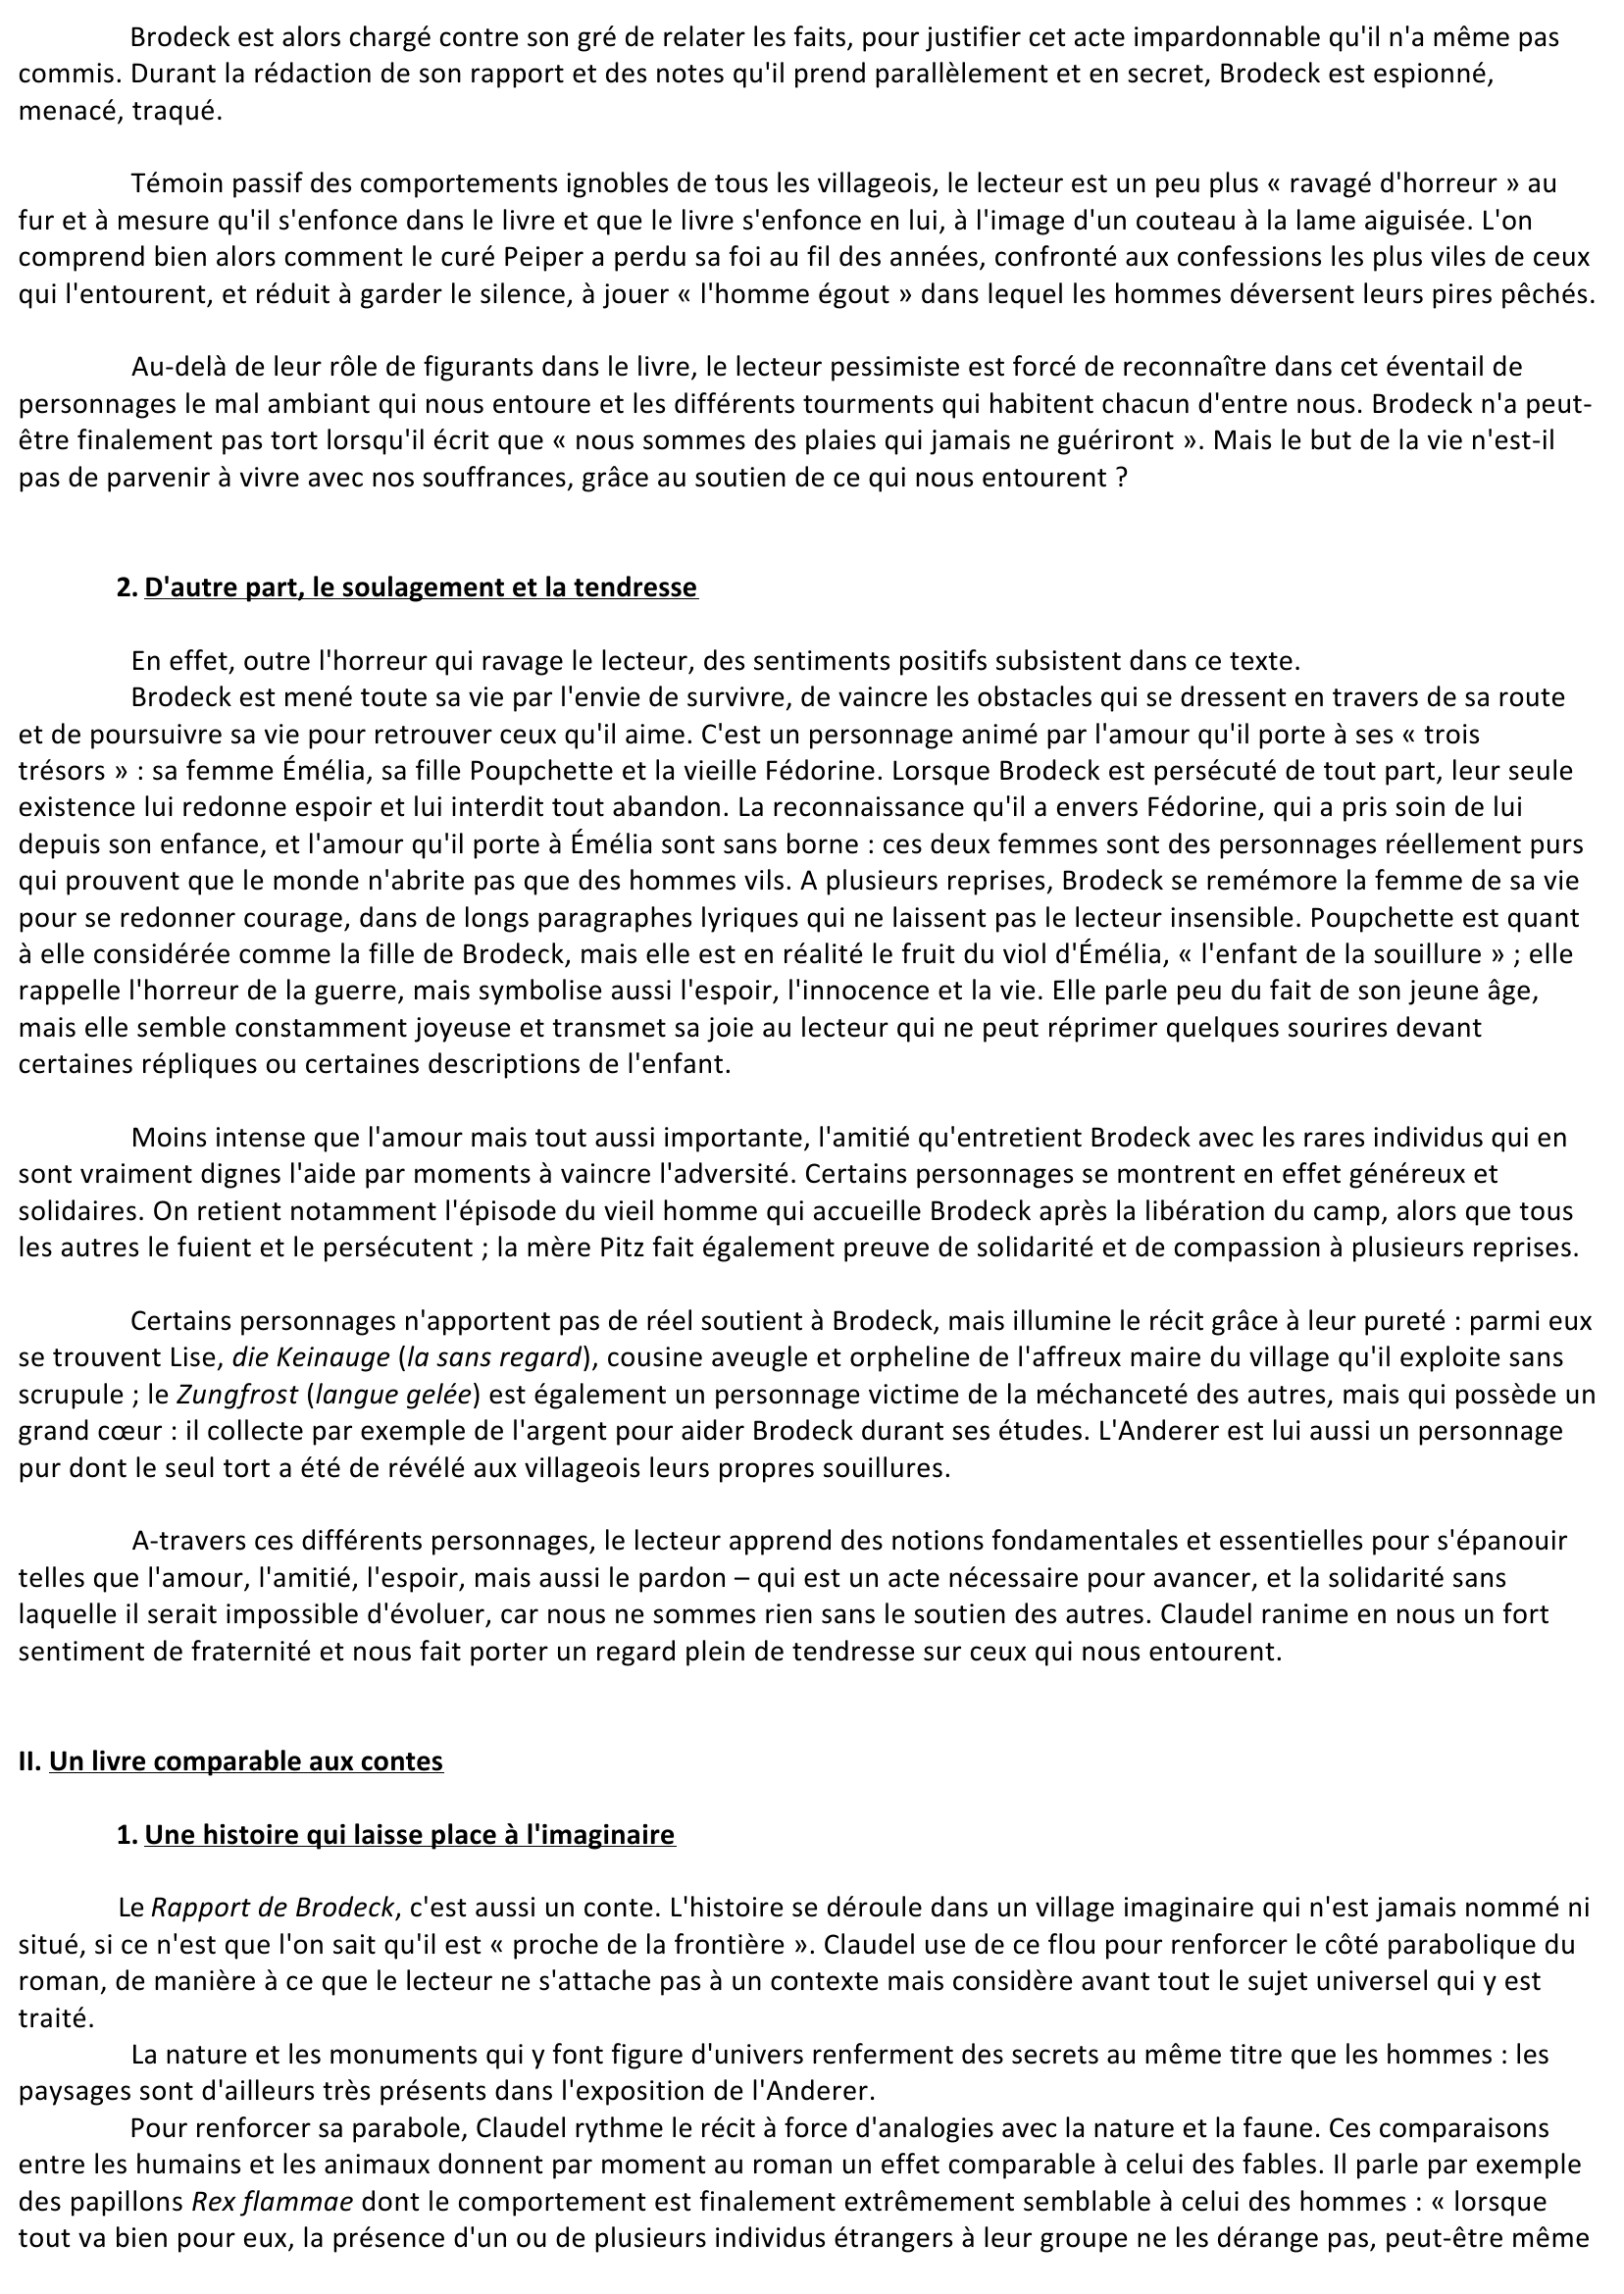 Prévisualisation du document Le Rapport de Brodeck de Philippe Claudel